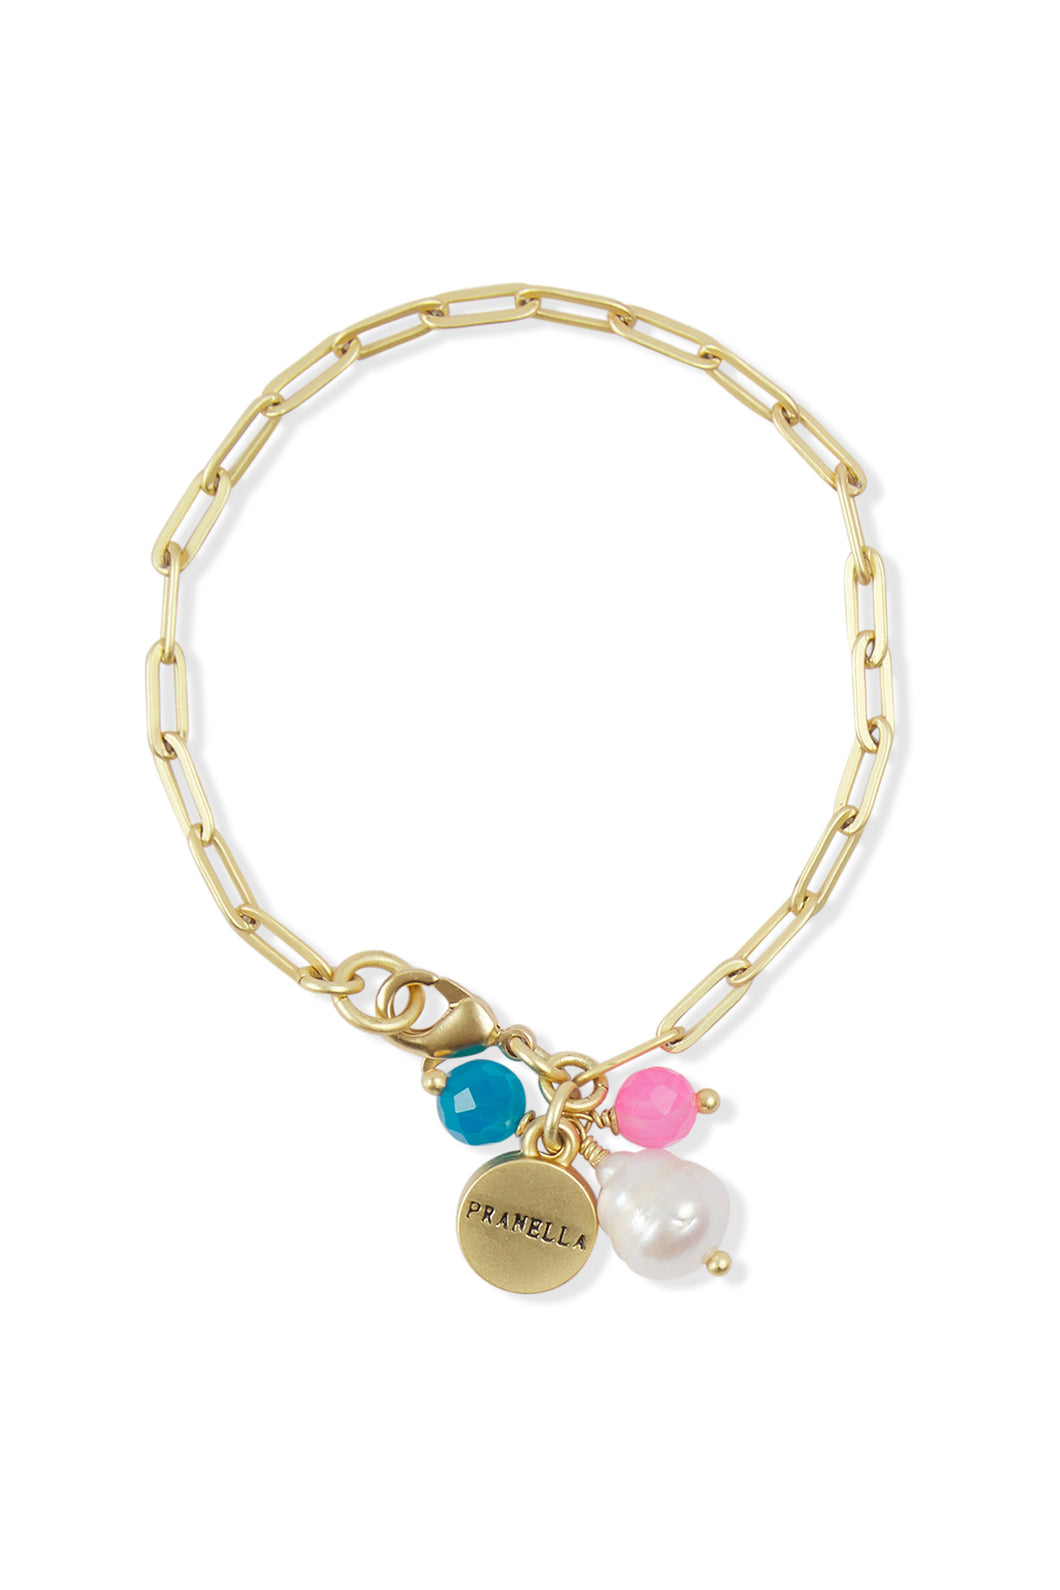 Pranella Antalya Gold Chain Bracelet